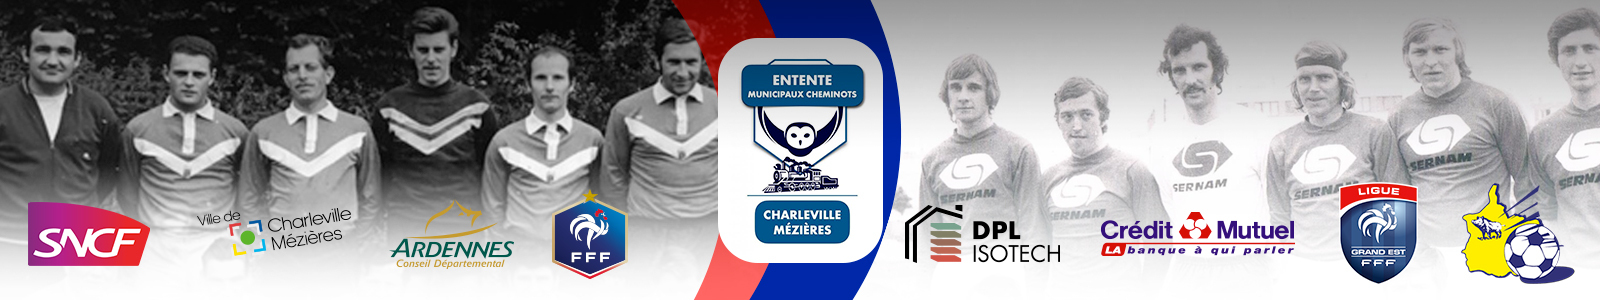 Entente des Municipaux et Cheminots de Charleville-Mézières : site officiel du club de foot de Charleville-Mézières - footeo